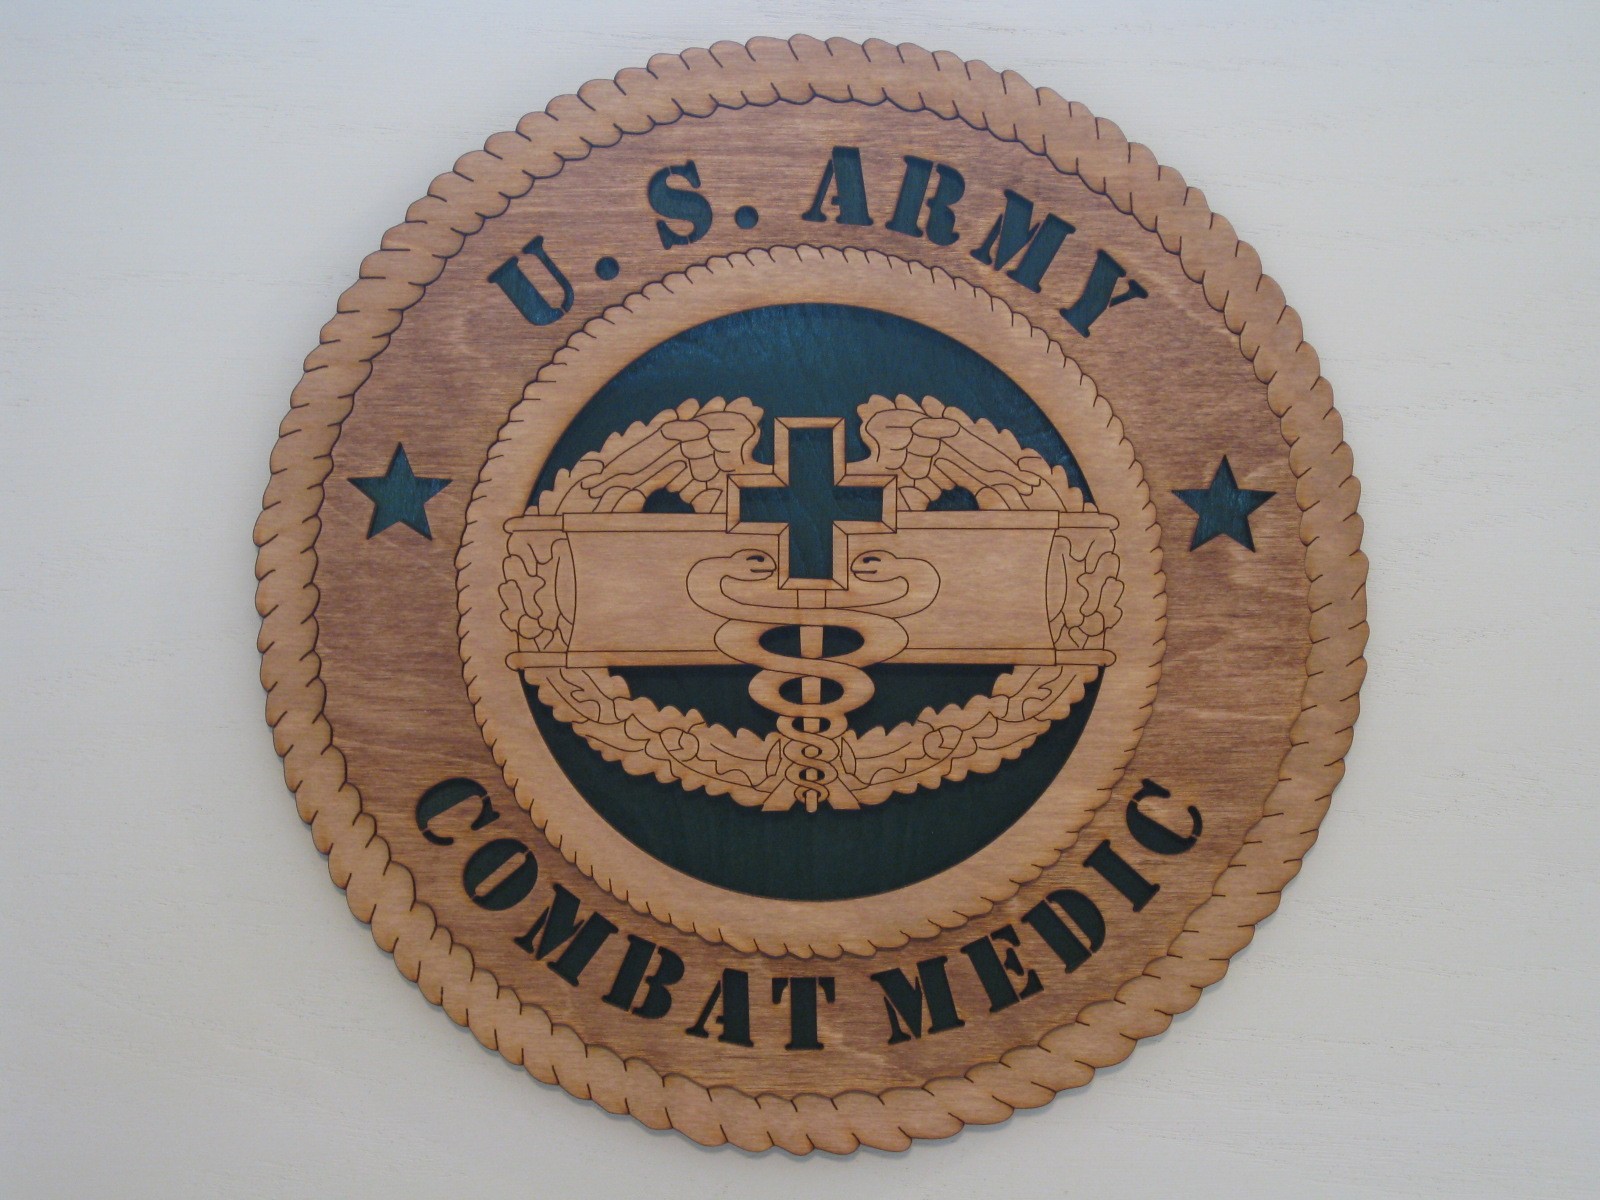 Combat Medic tattoo